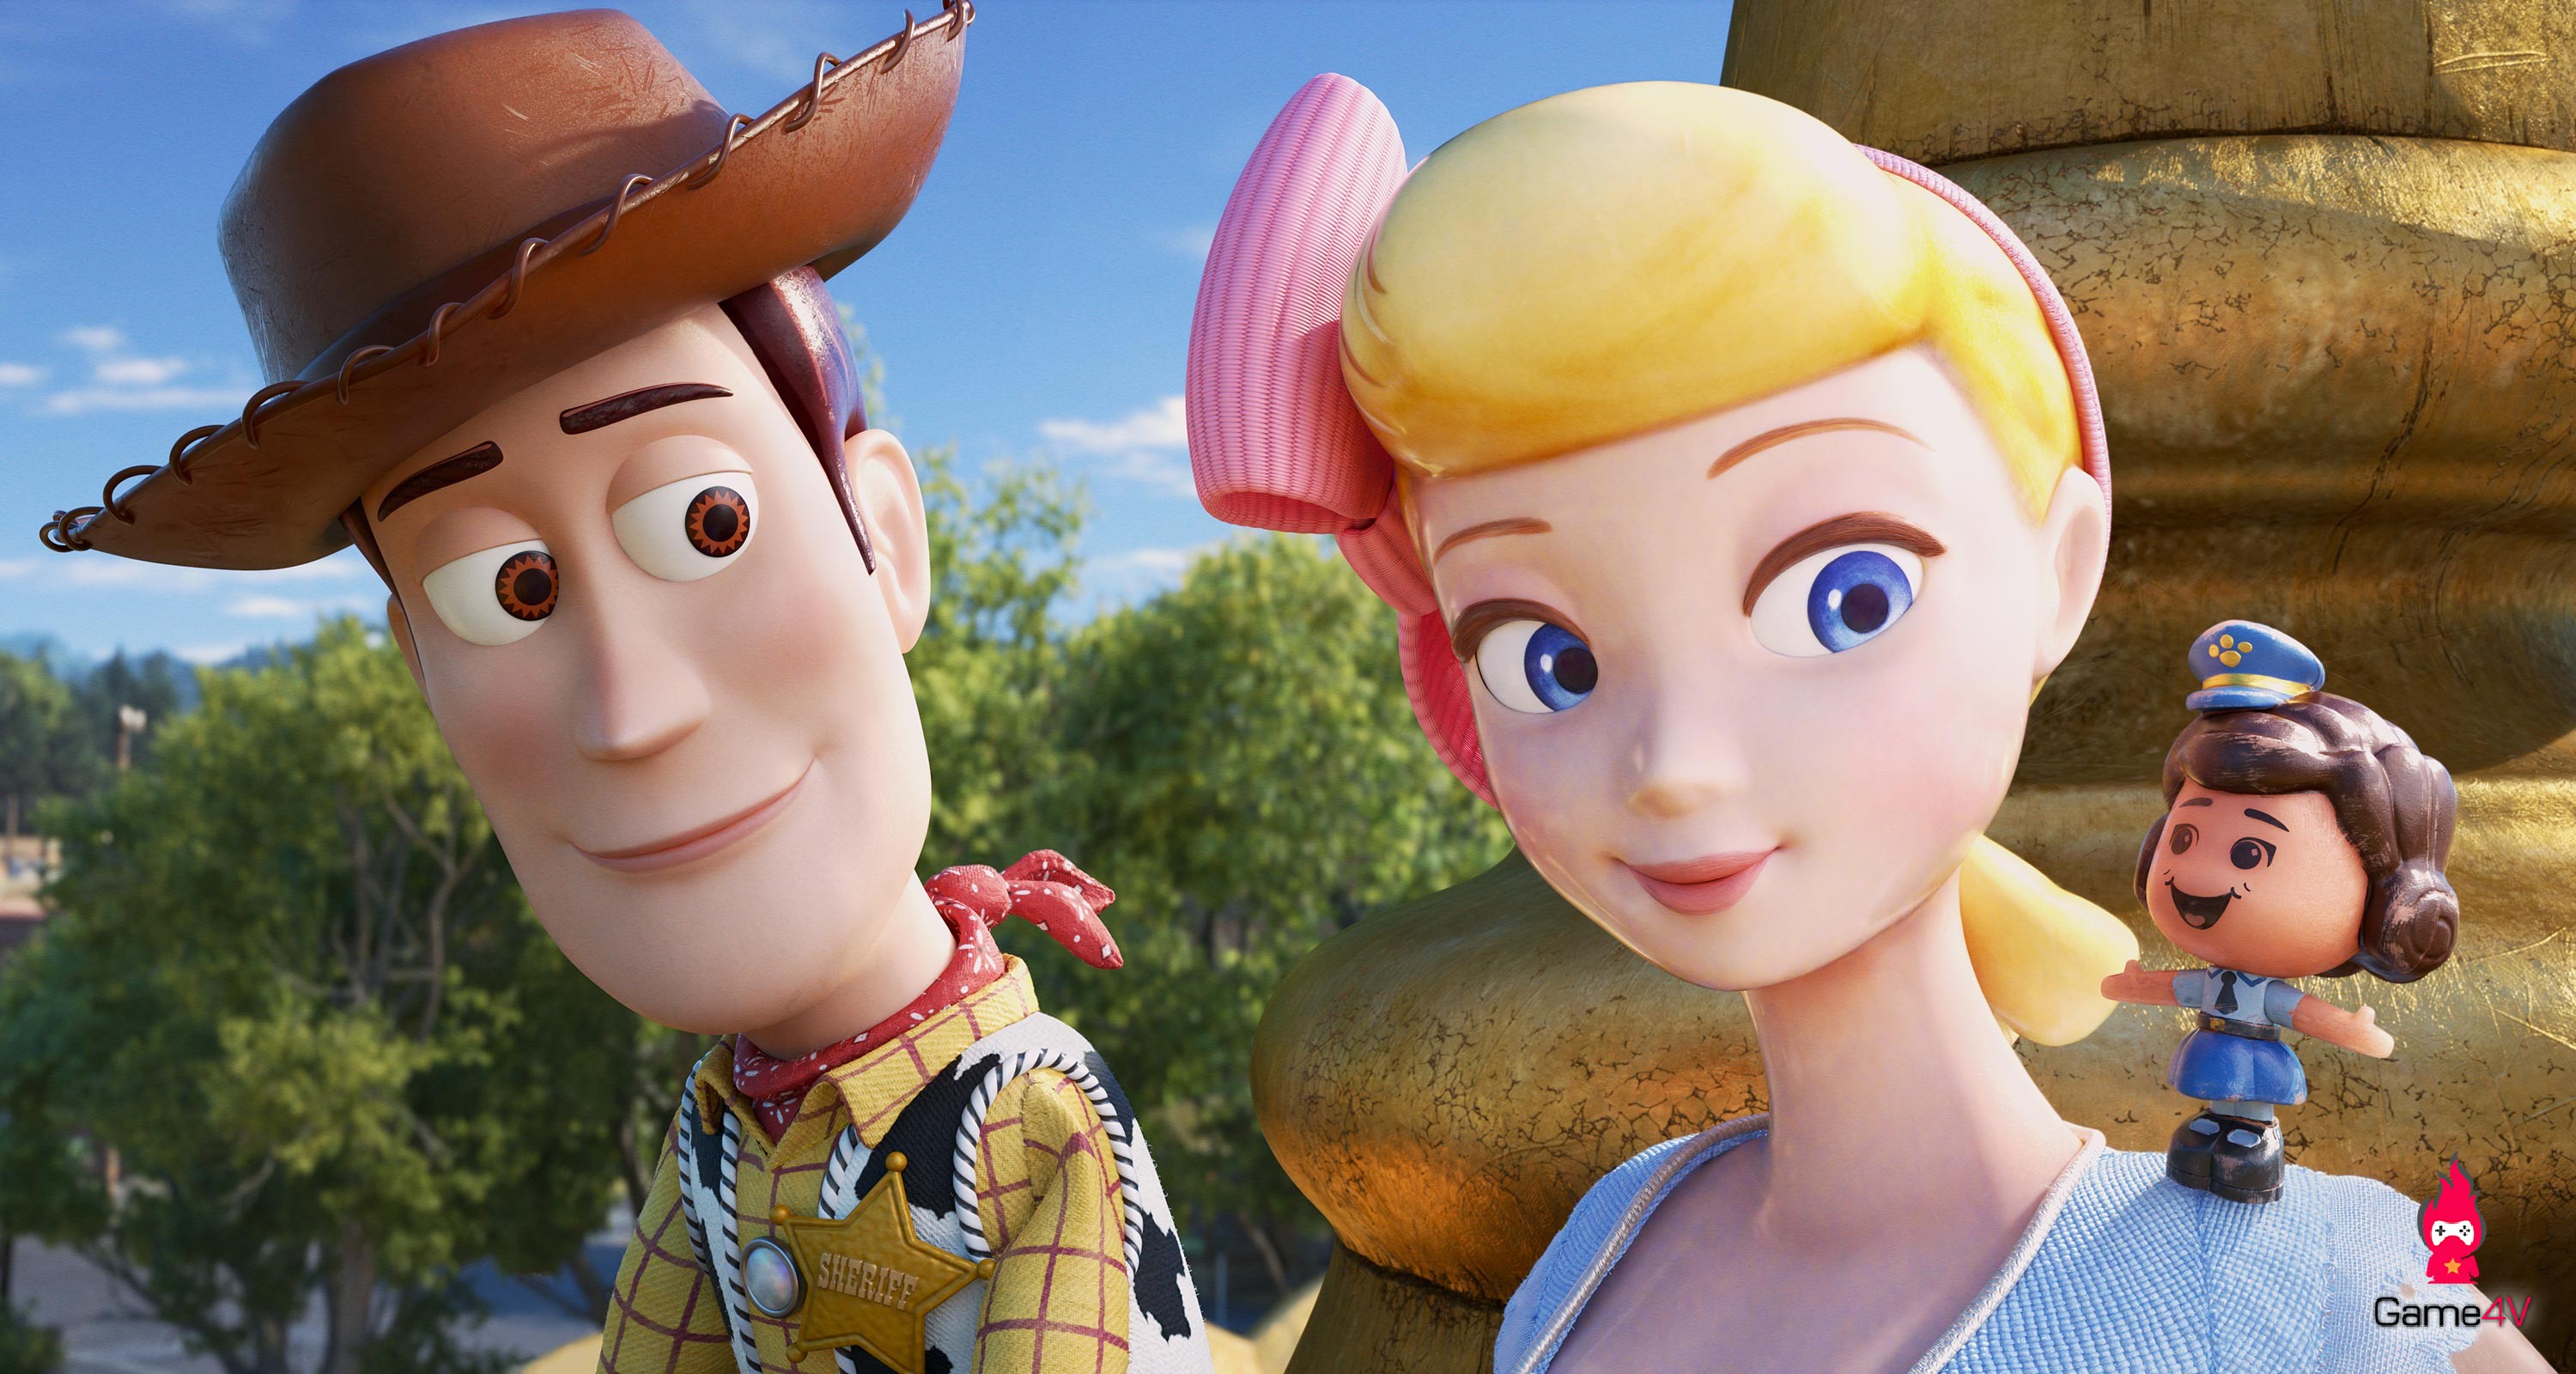 Đánh giá phim Toy Story 4: Chuyến phiêu lưu hấp dẫn, hài hước và vô cùng ấm áp